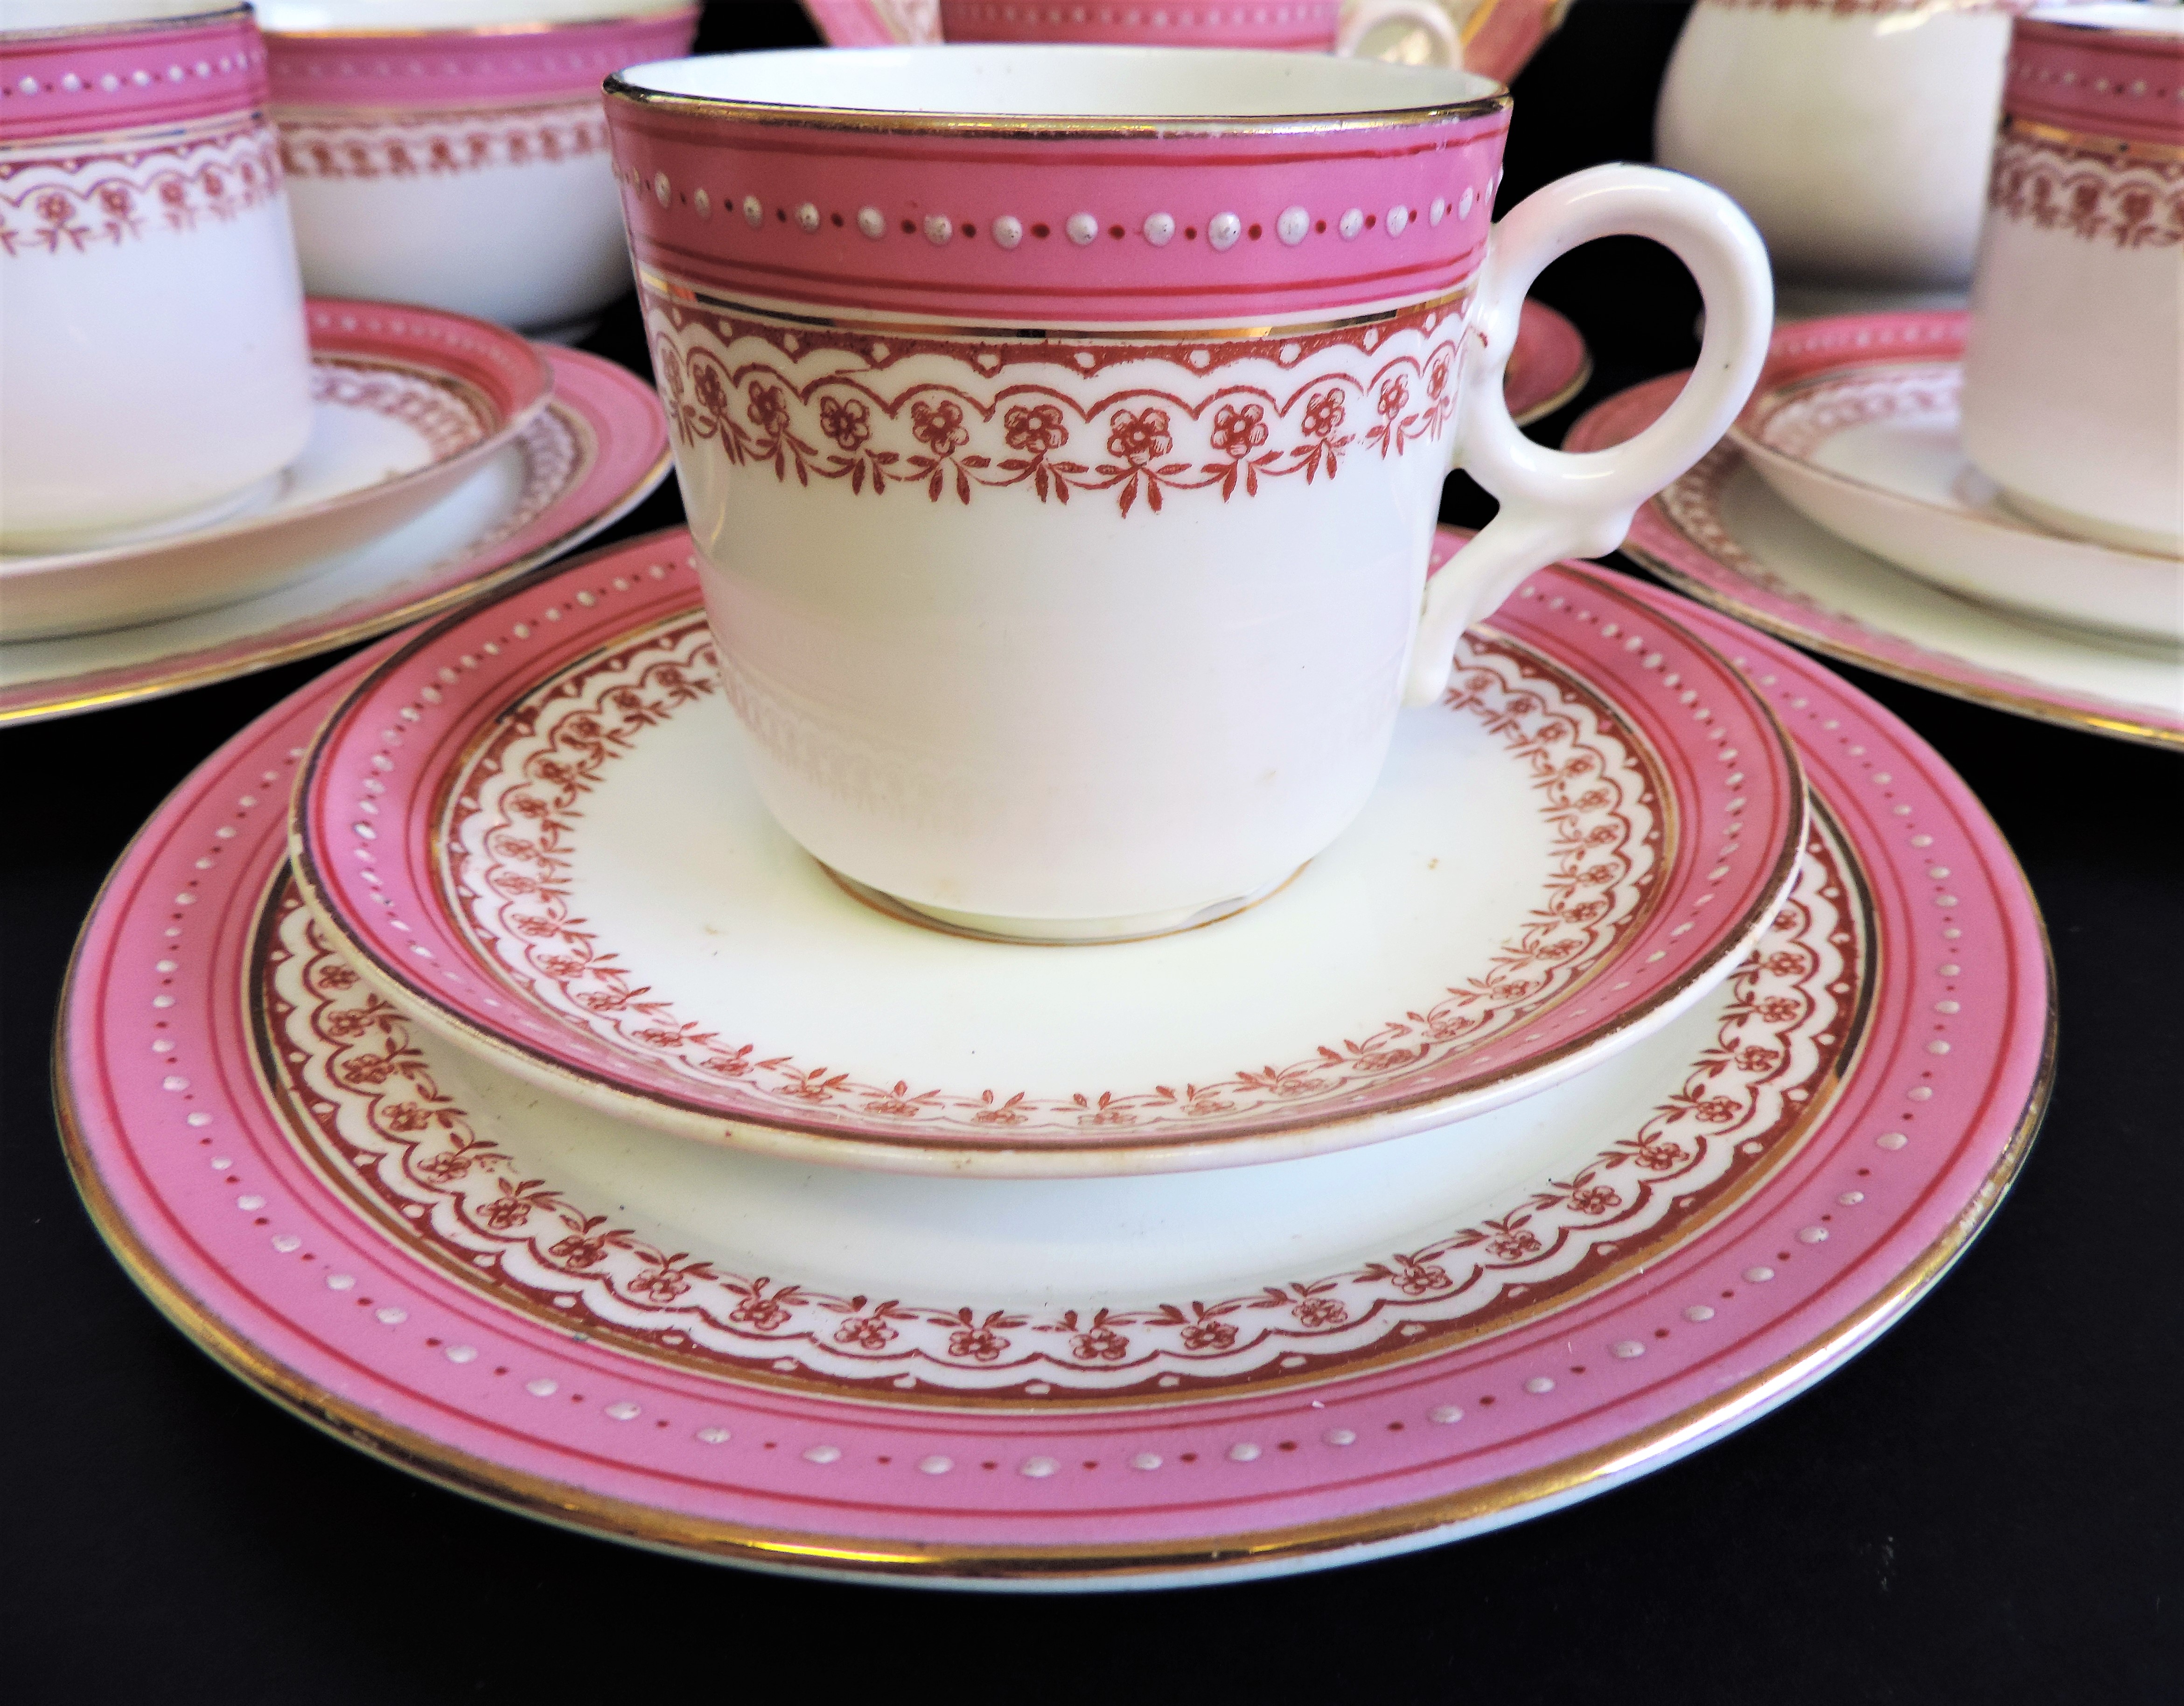 Vintage 19 piece Porcelain Breakfast/Tea Set for 4 People - Image 19 of 24